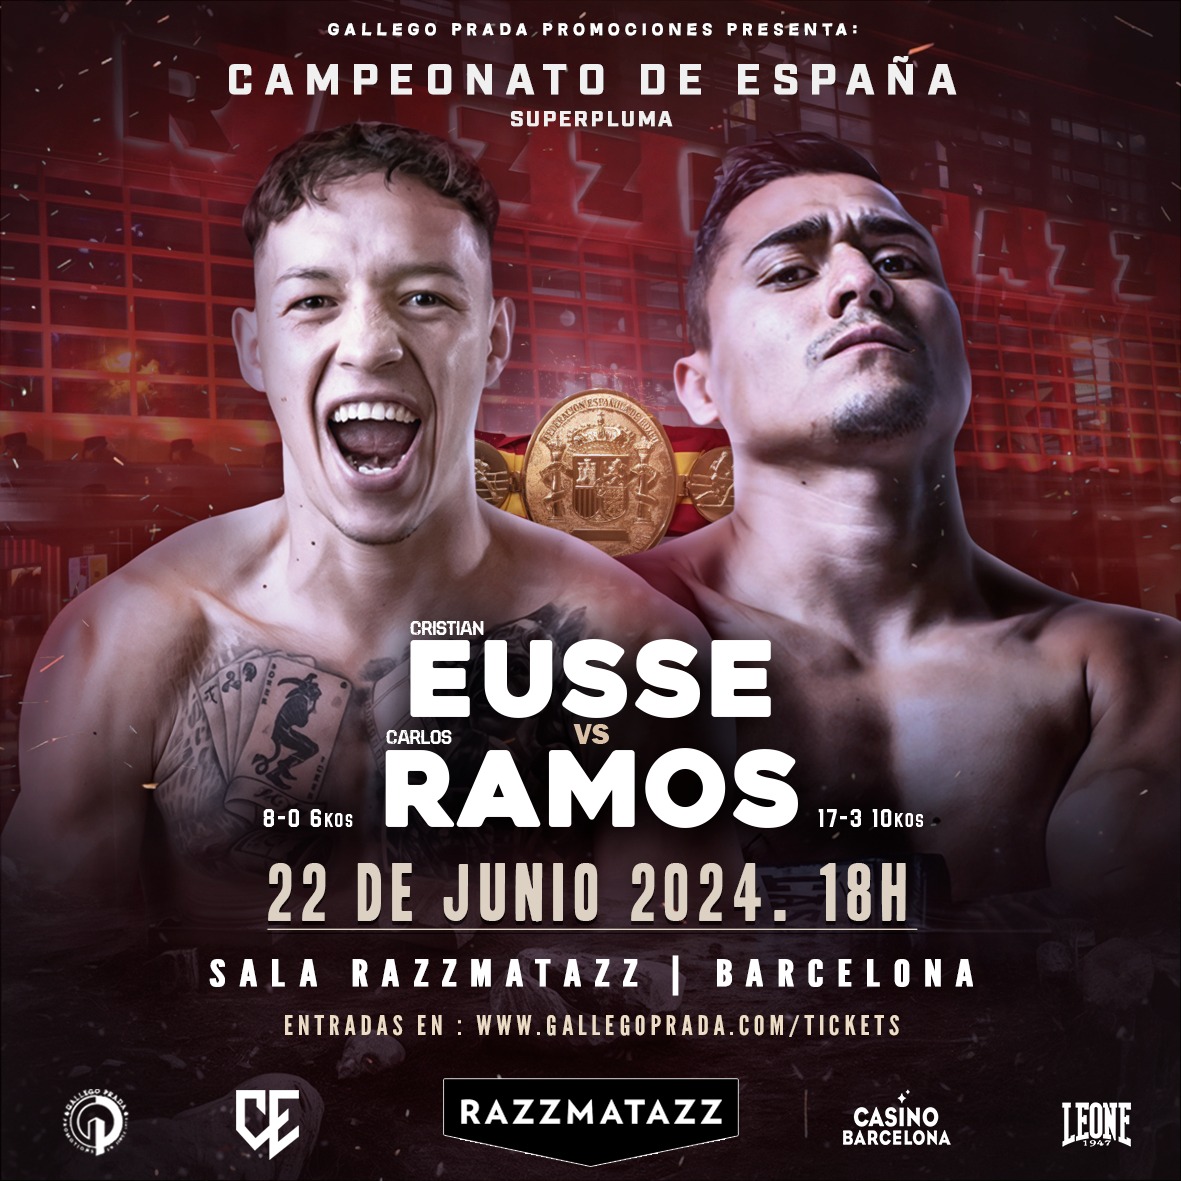 Campeonato de España Eusse vs Ramos